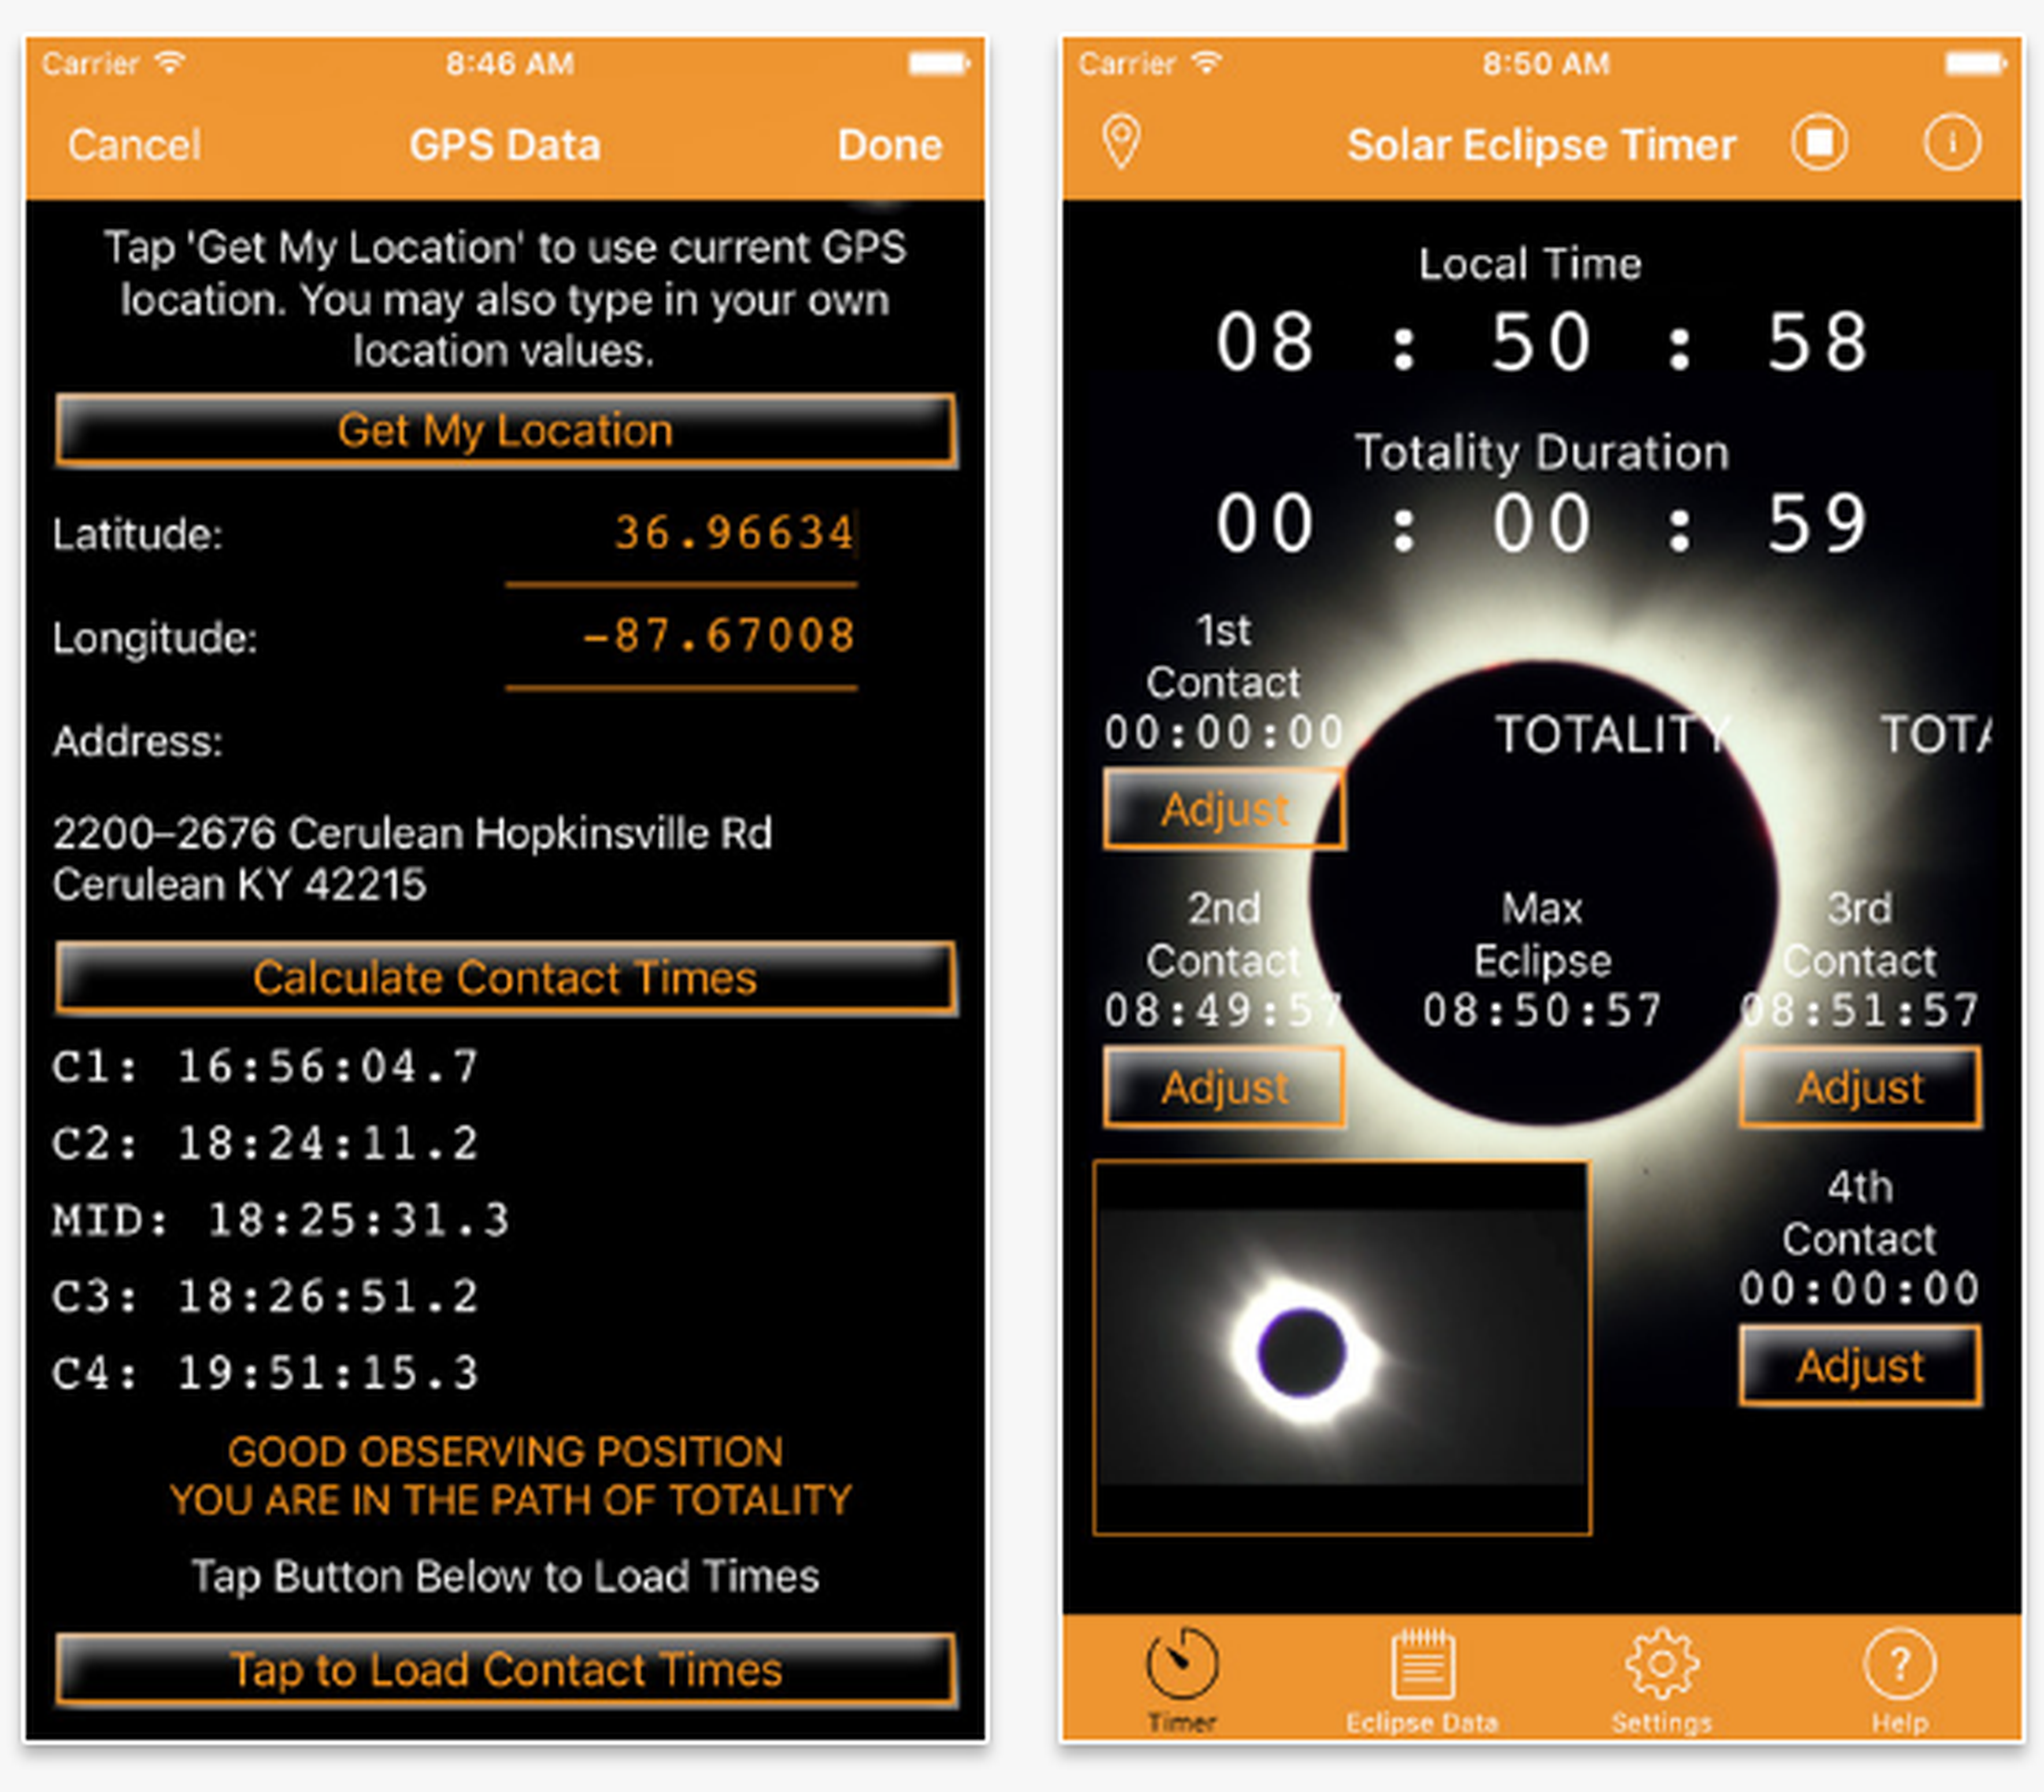 Las mejores apps para ver el eclipse solar de agosto 2017